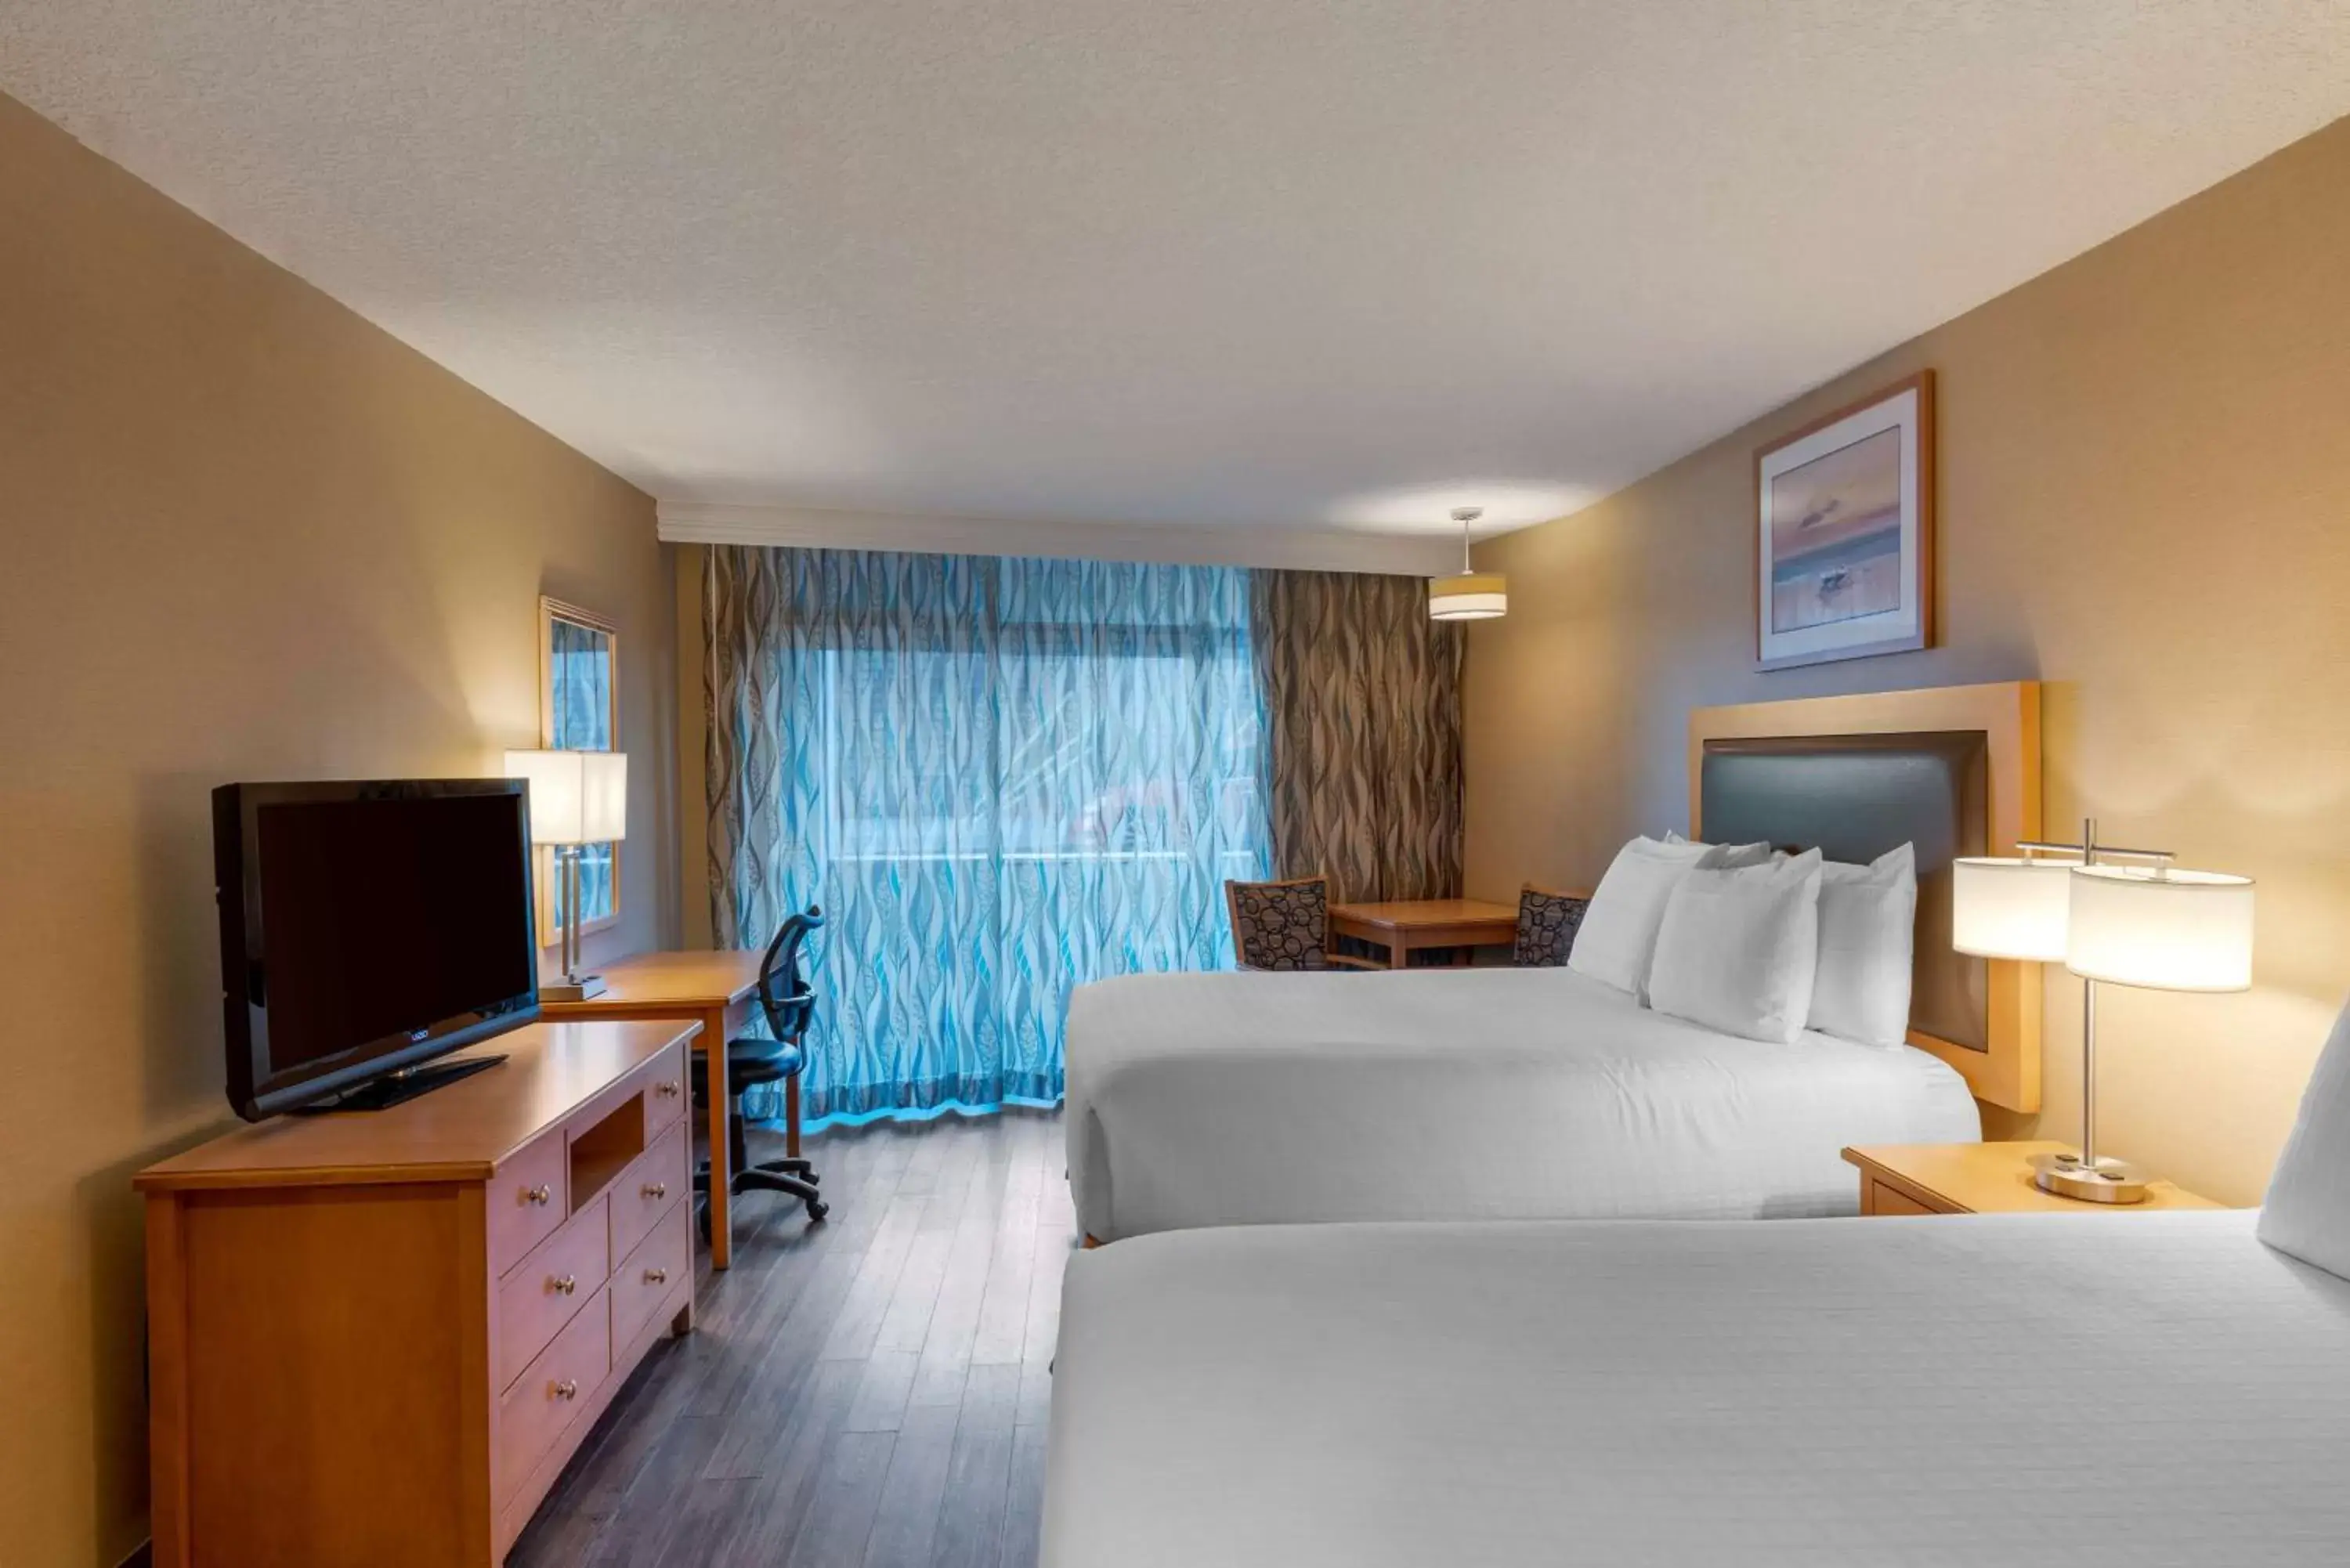 Bedroom, TV/Entertainment Center in Best Western Plus Ocean View Resort